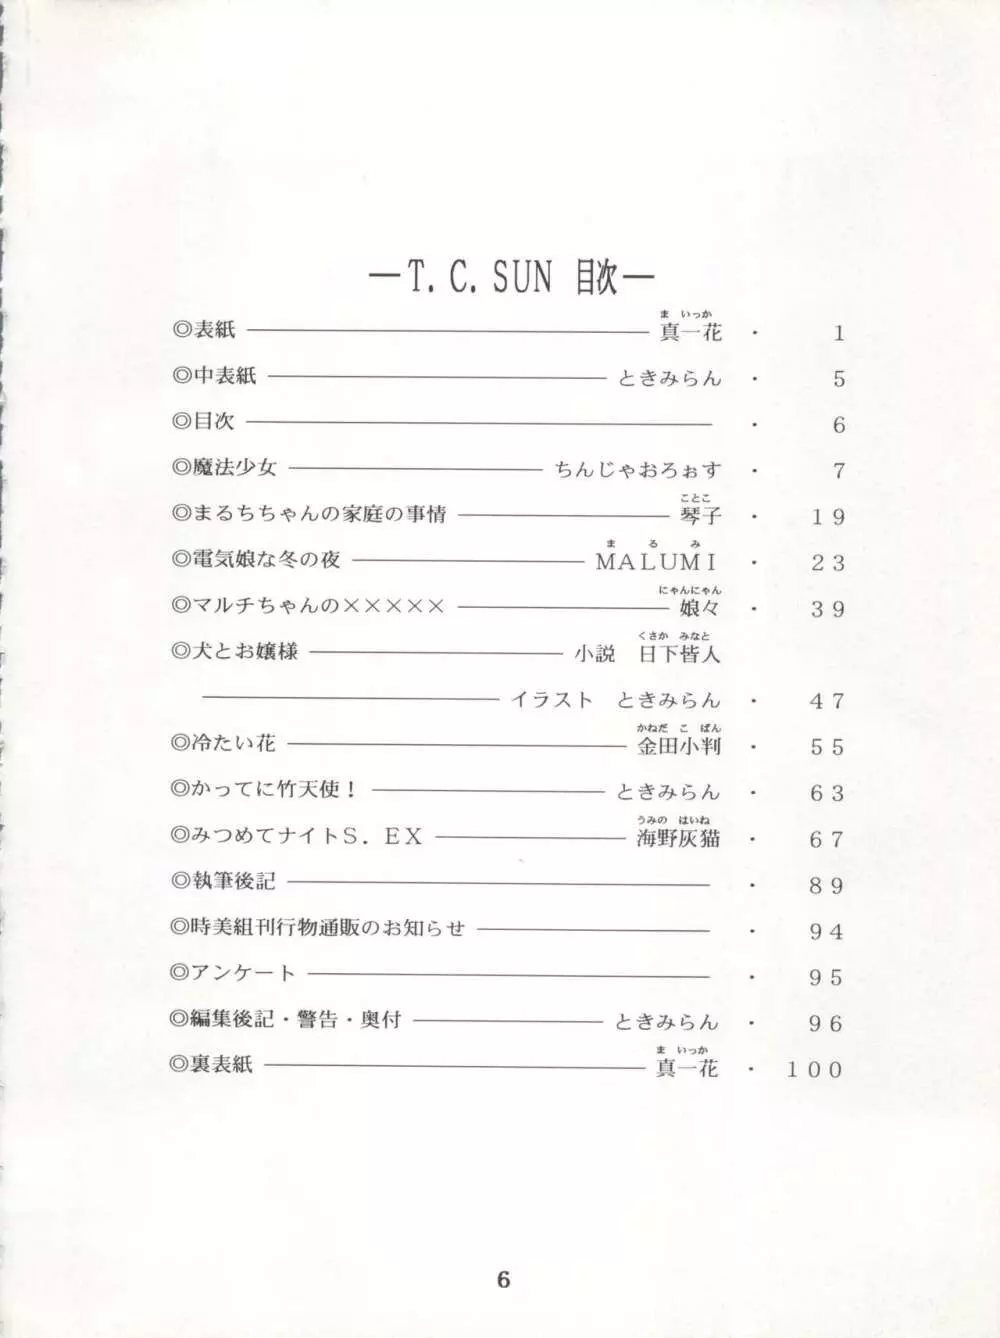 T.C.SUN - page4